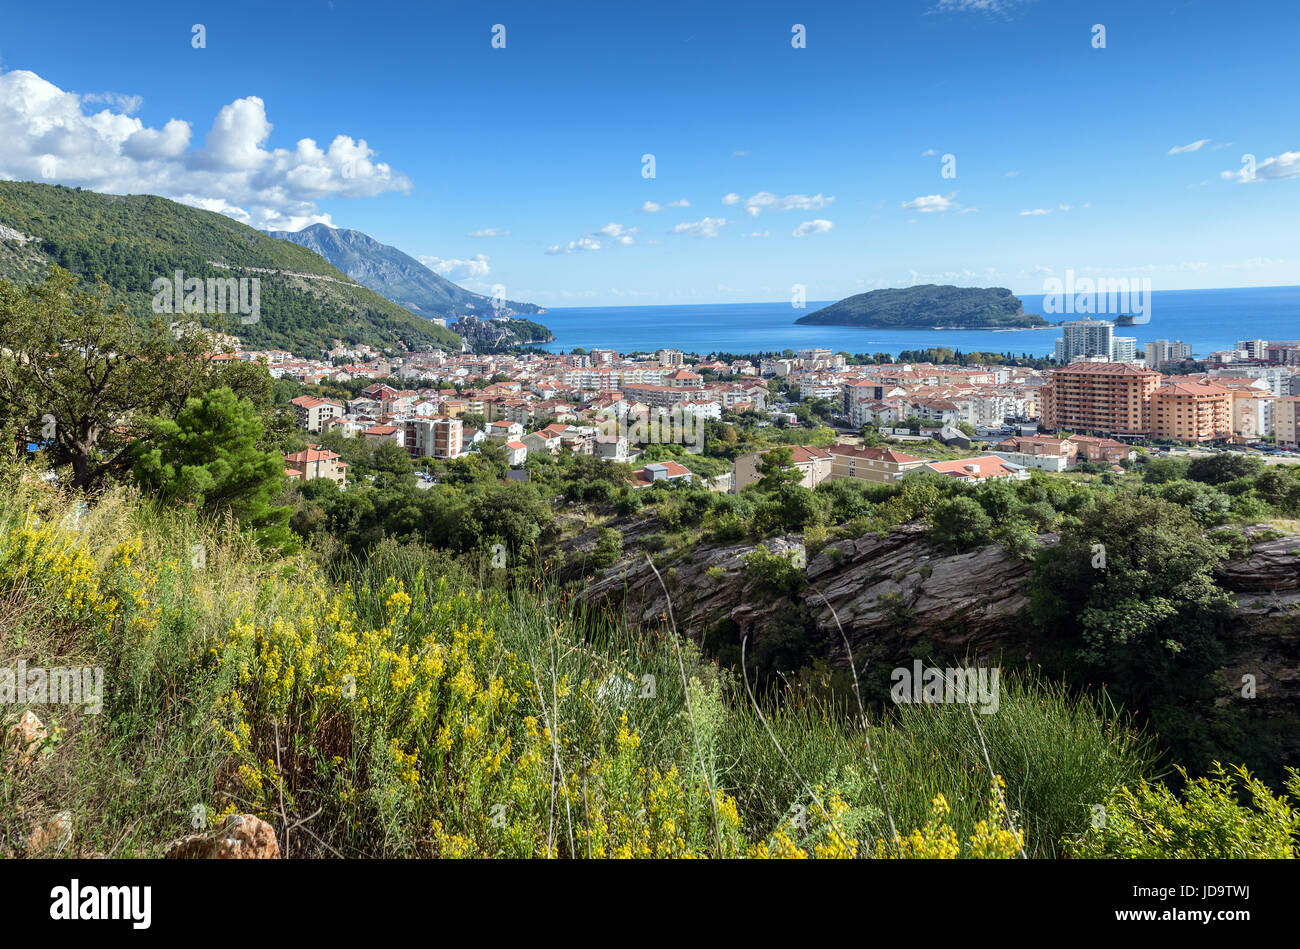 Panorama-Landschaft von Budva Riviera. Balkan, Adria, Europa. Blick vom Gipfel des Berges Stockfoto